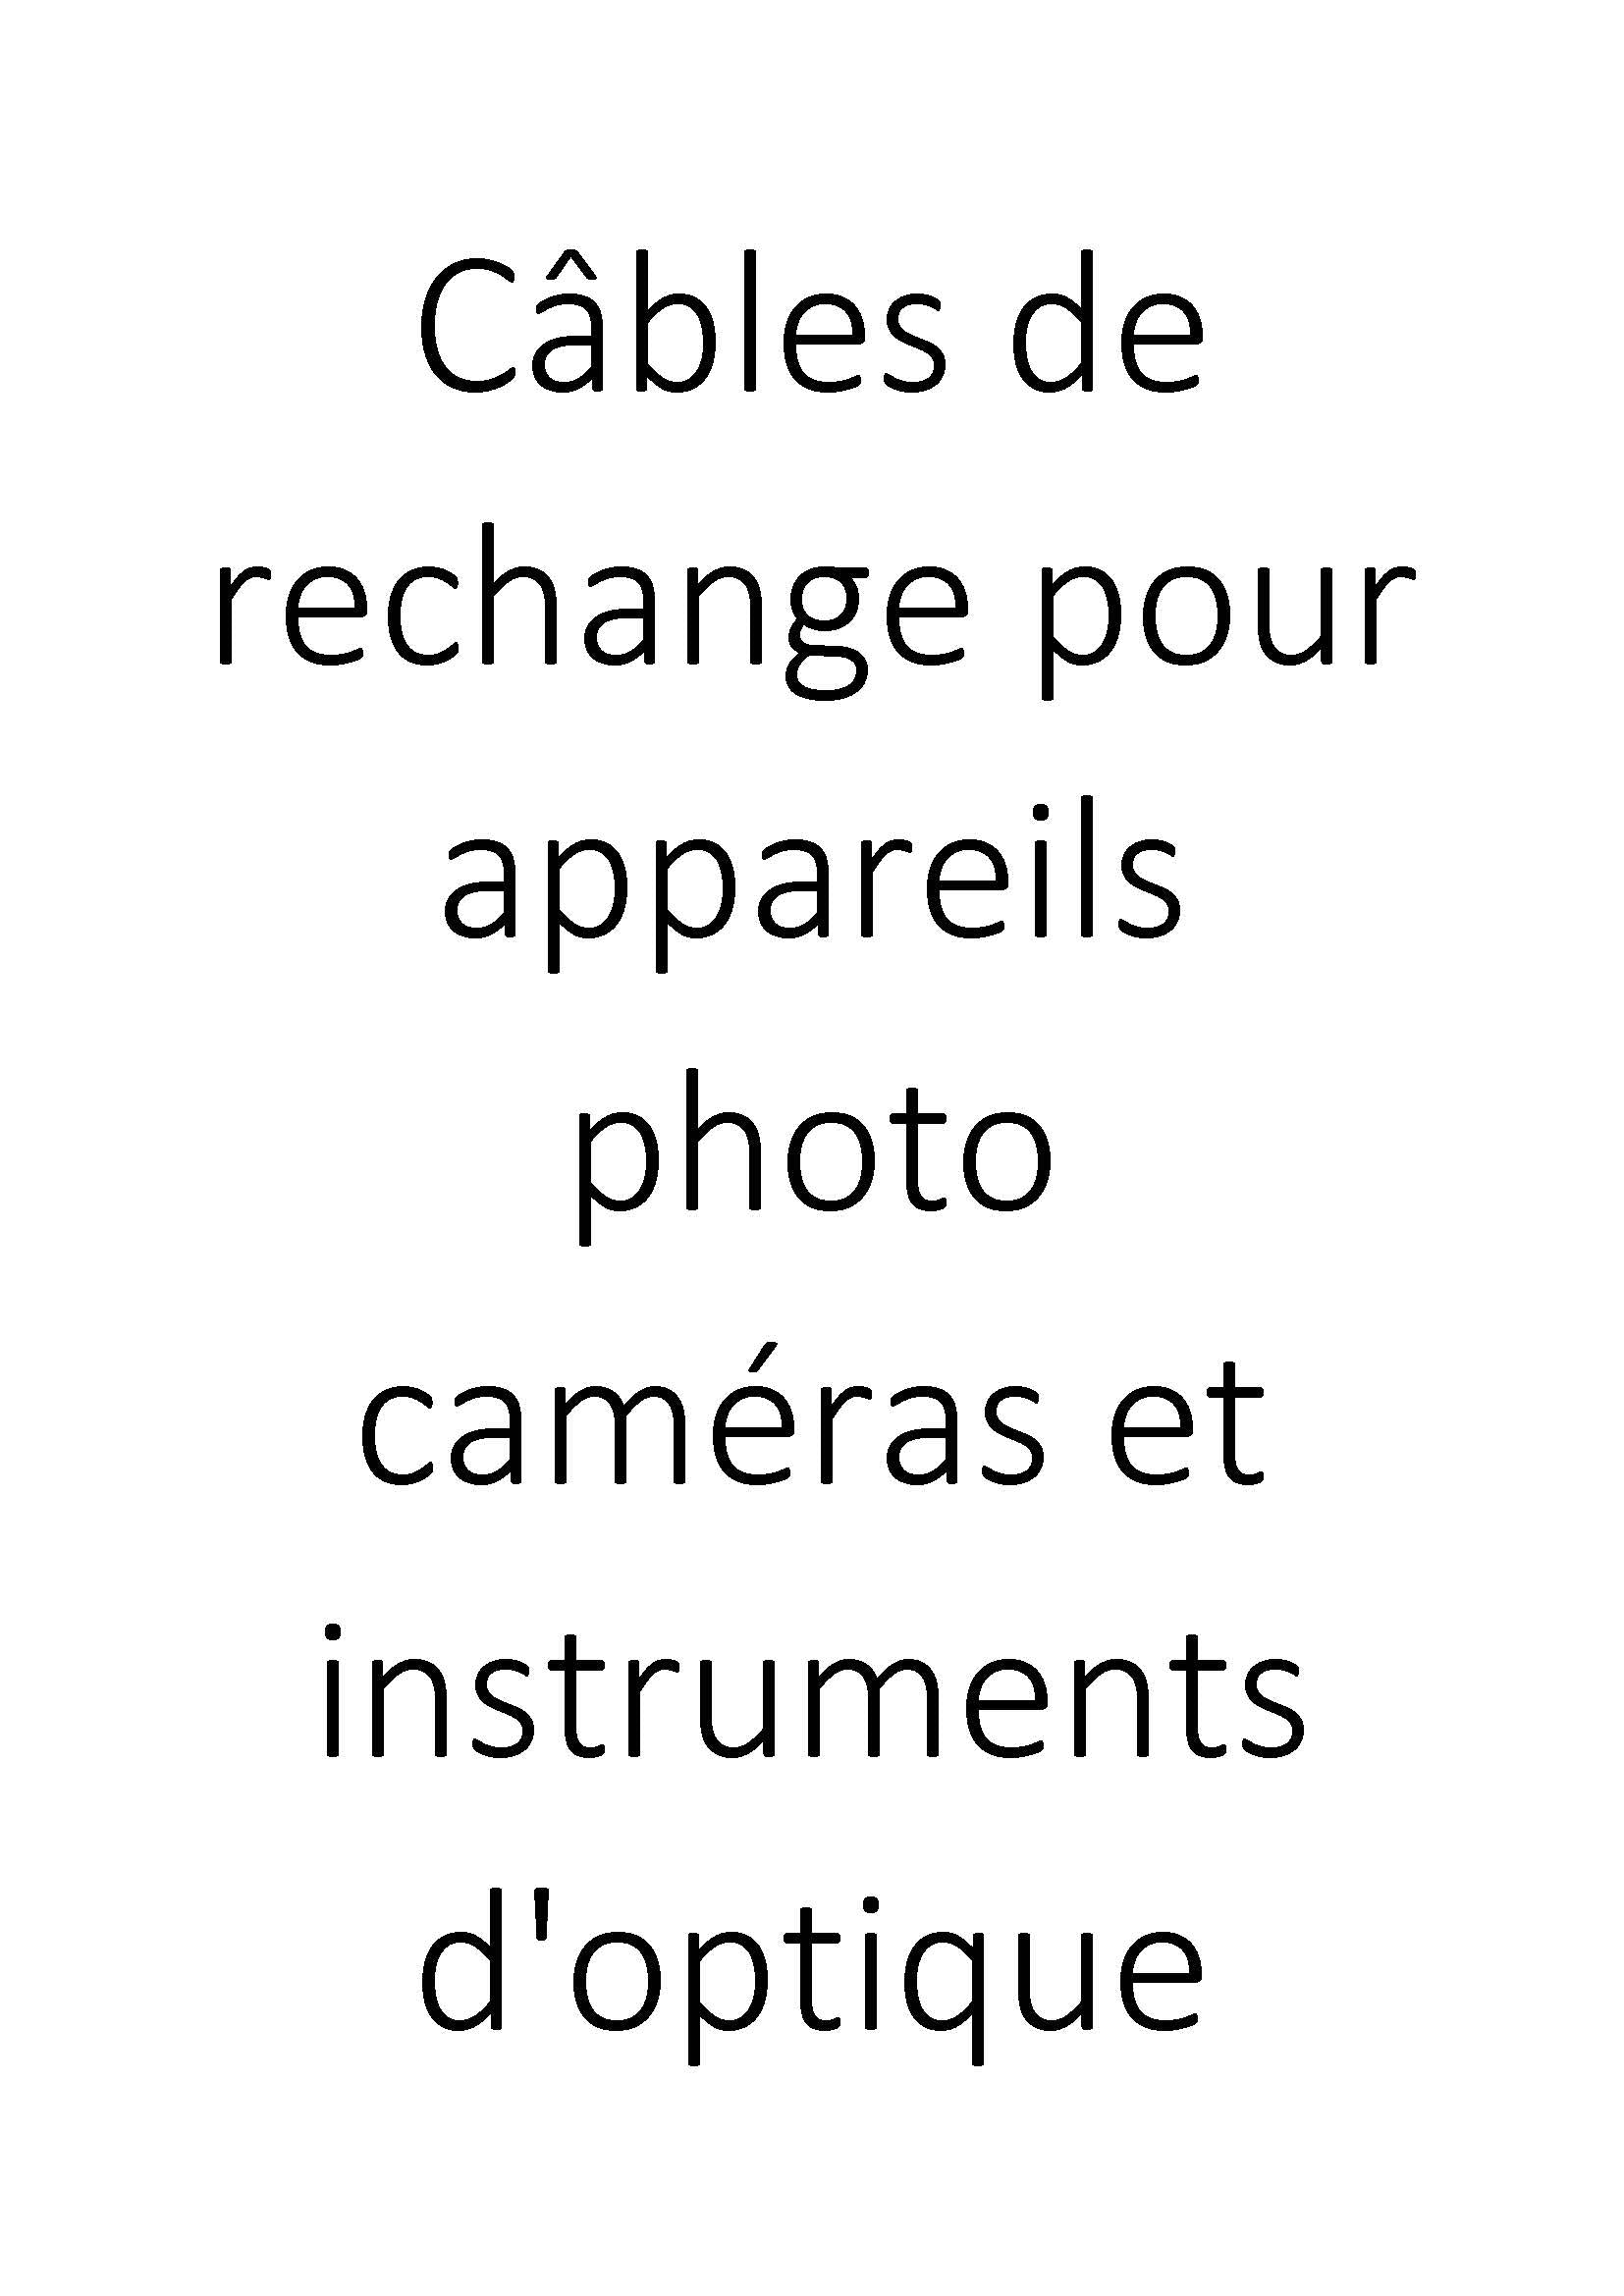 Câbles de rechange pour appareils photo caméras et instruments d'optique clicktofournisseur.com